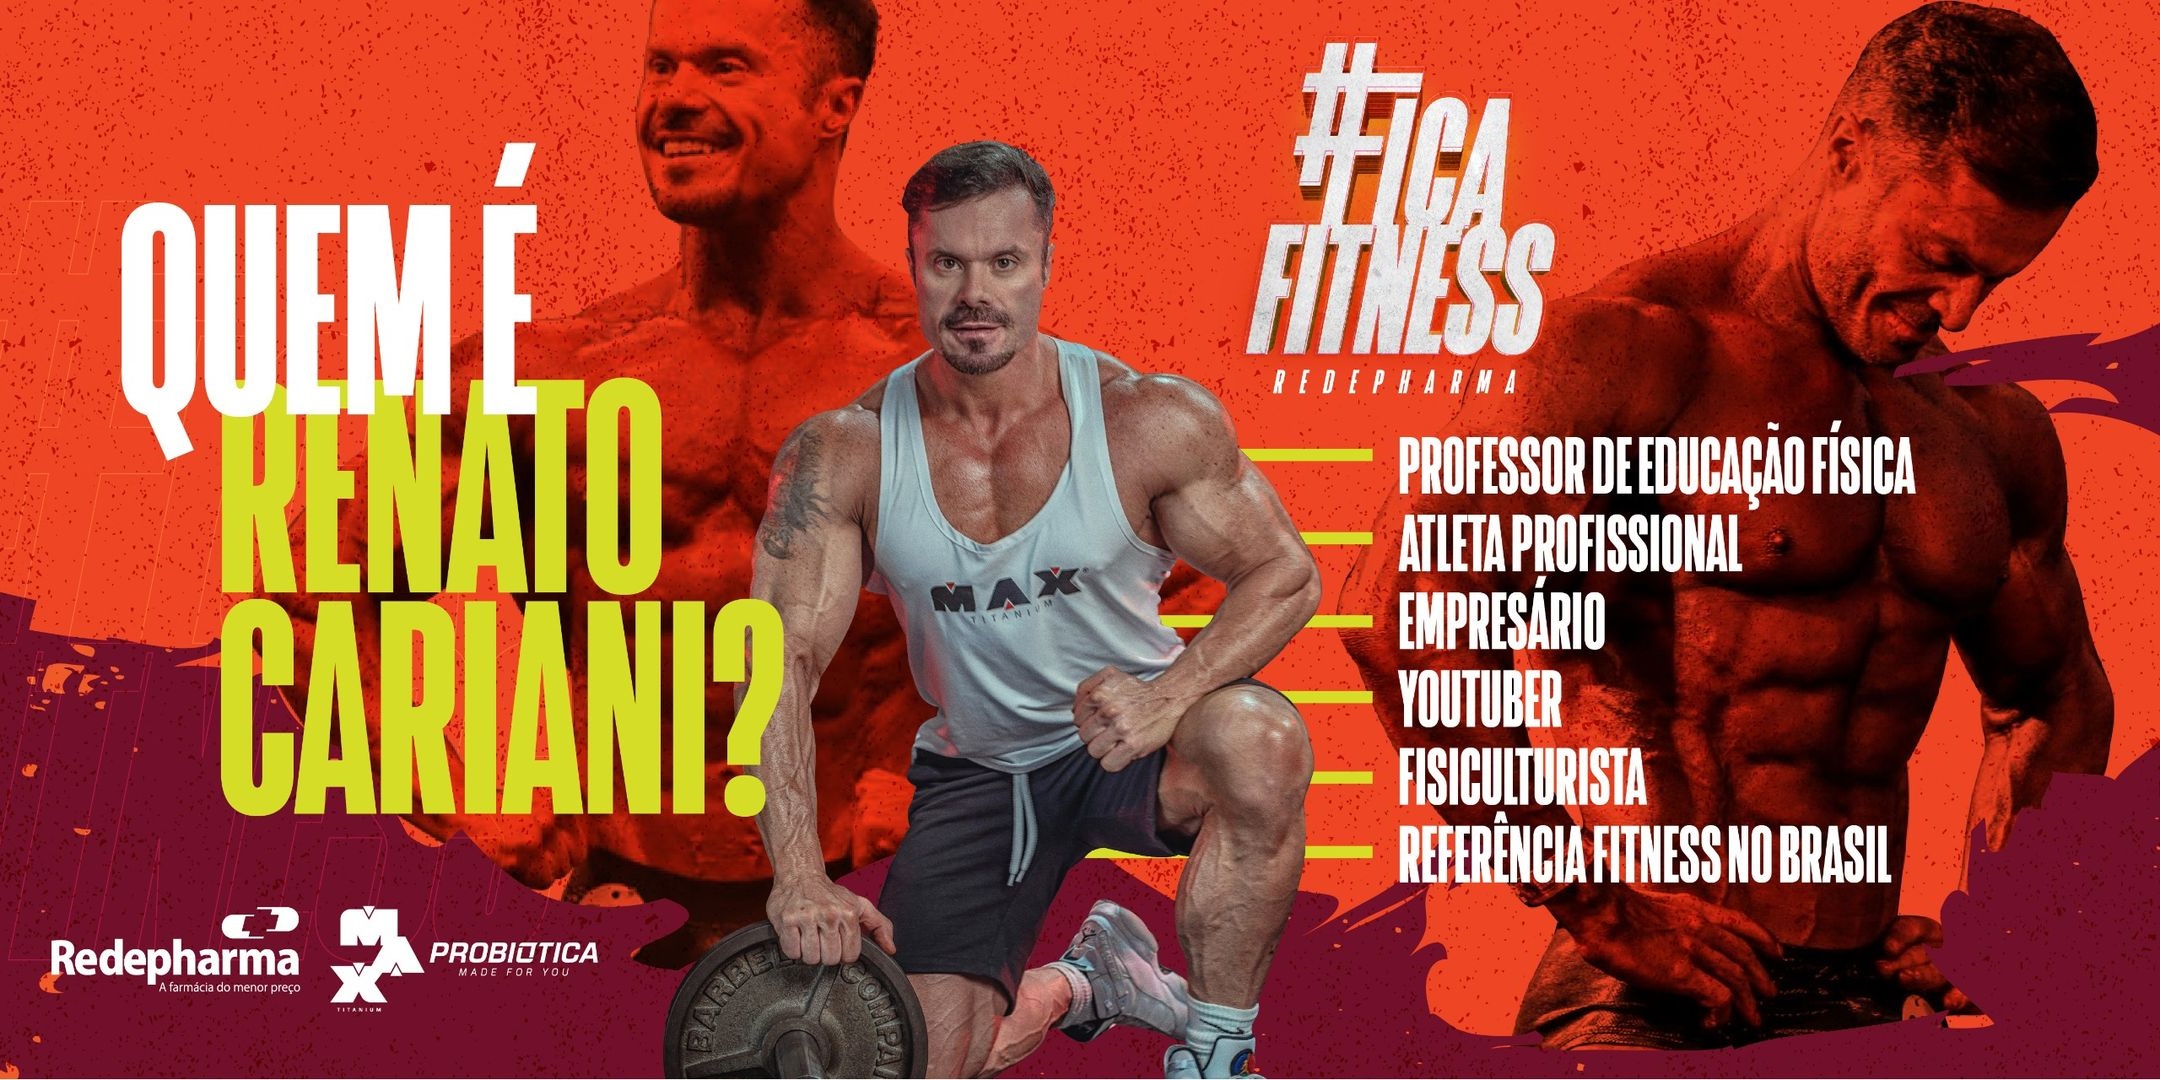 Renato Cariani fitness